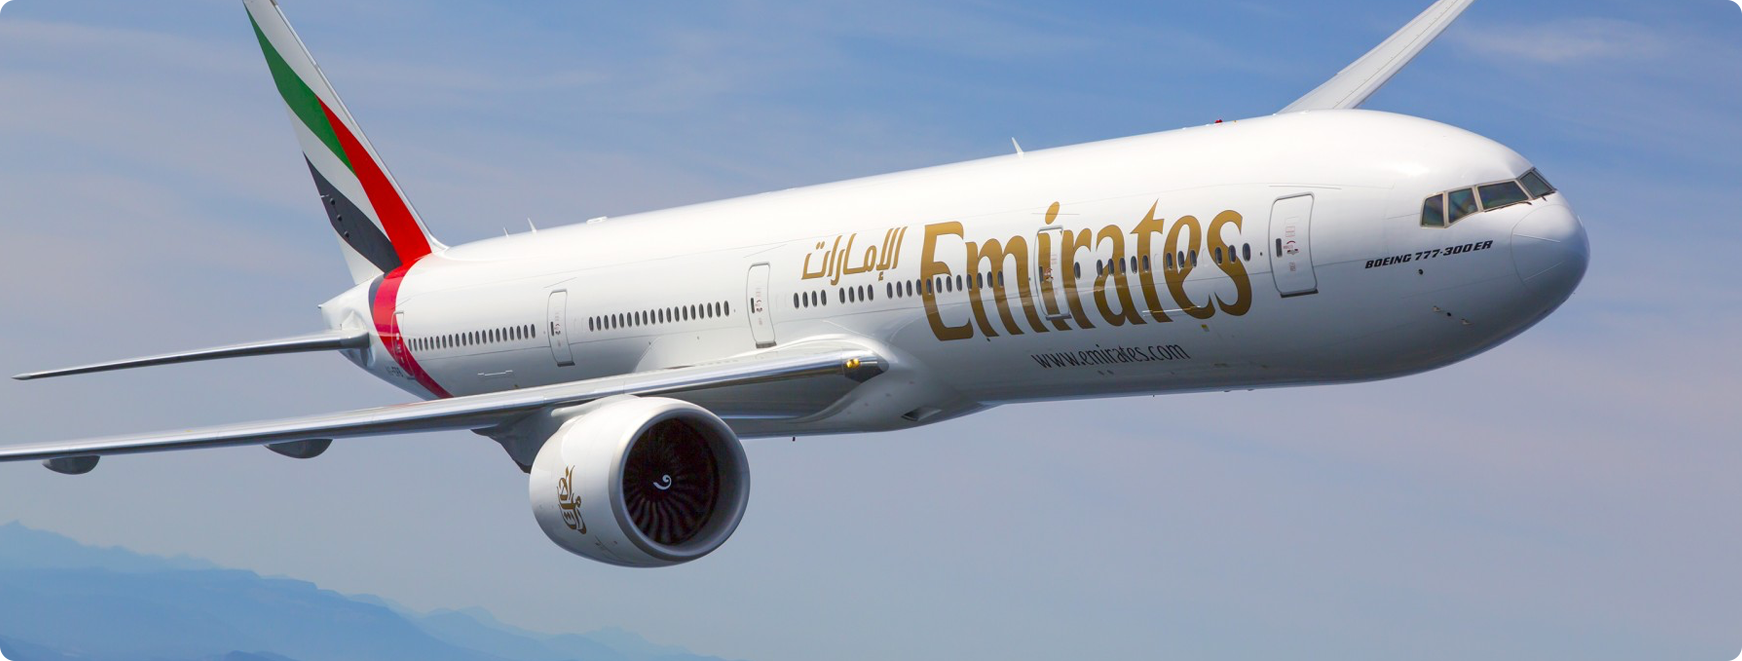 Emirates plane flying